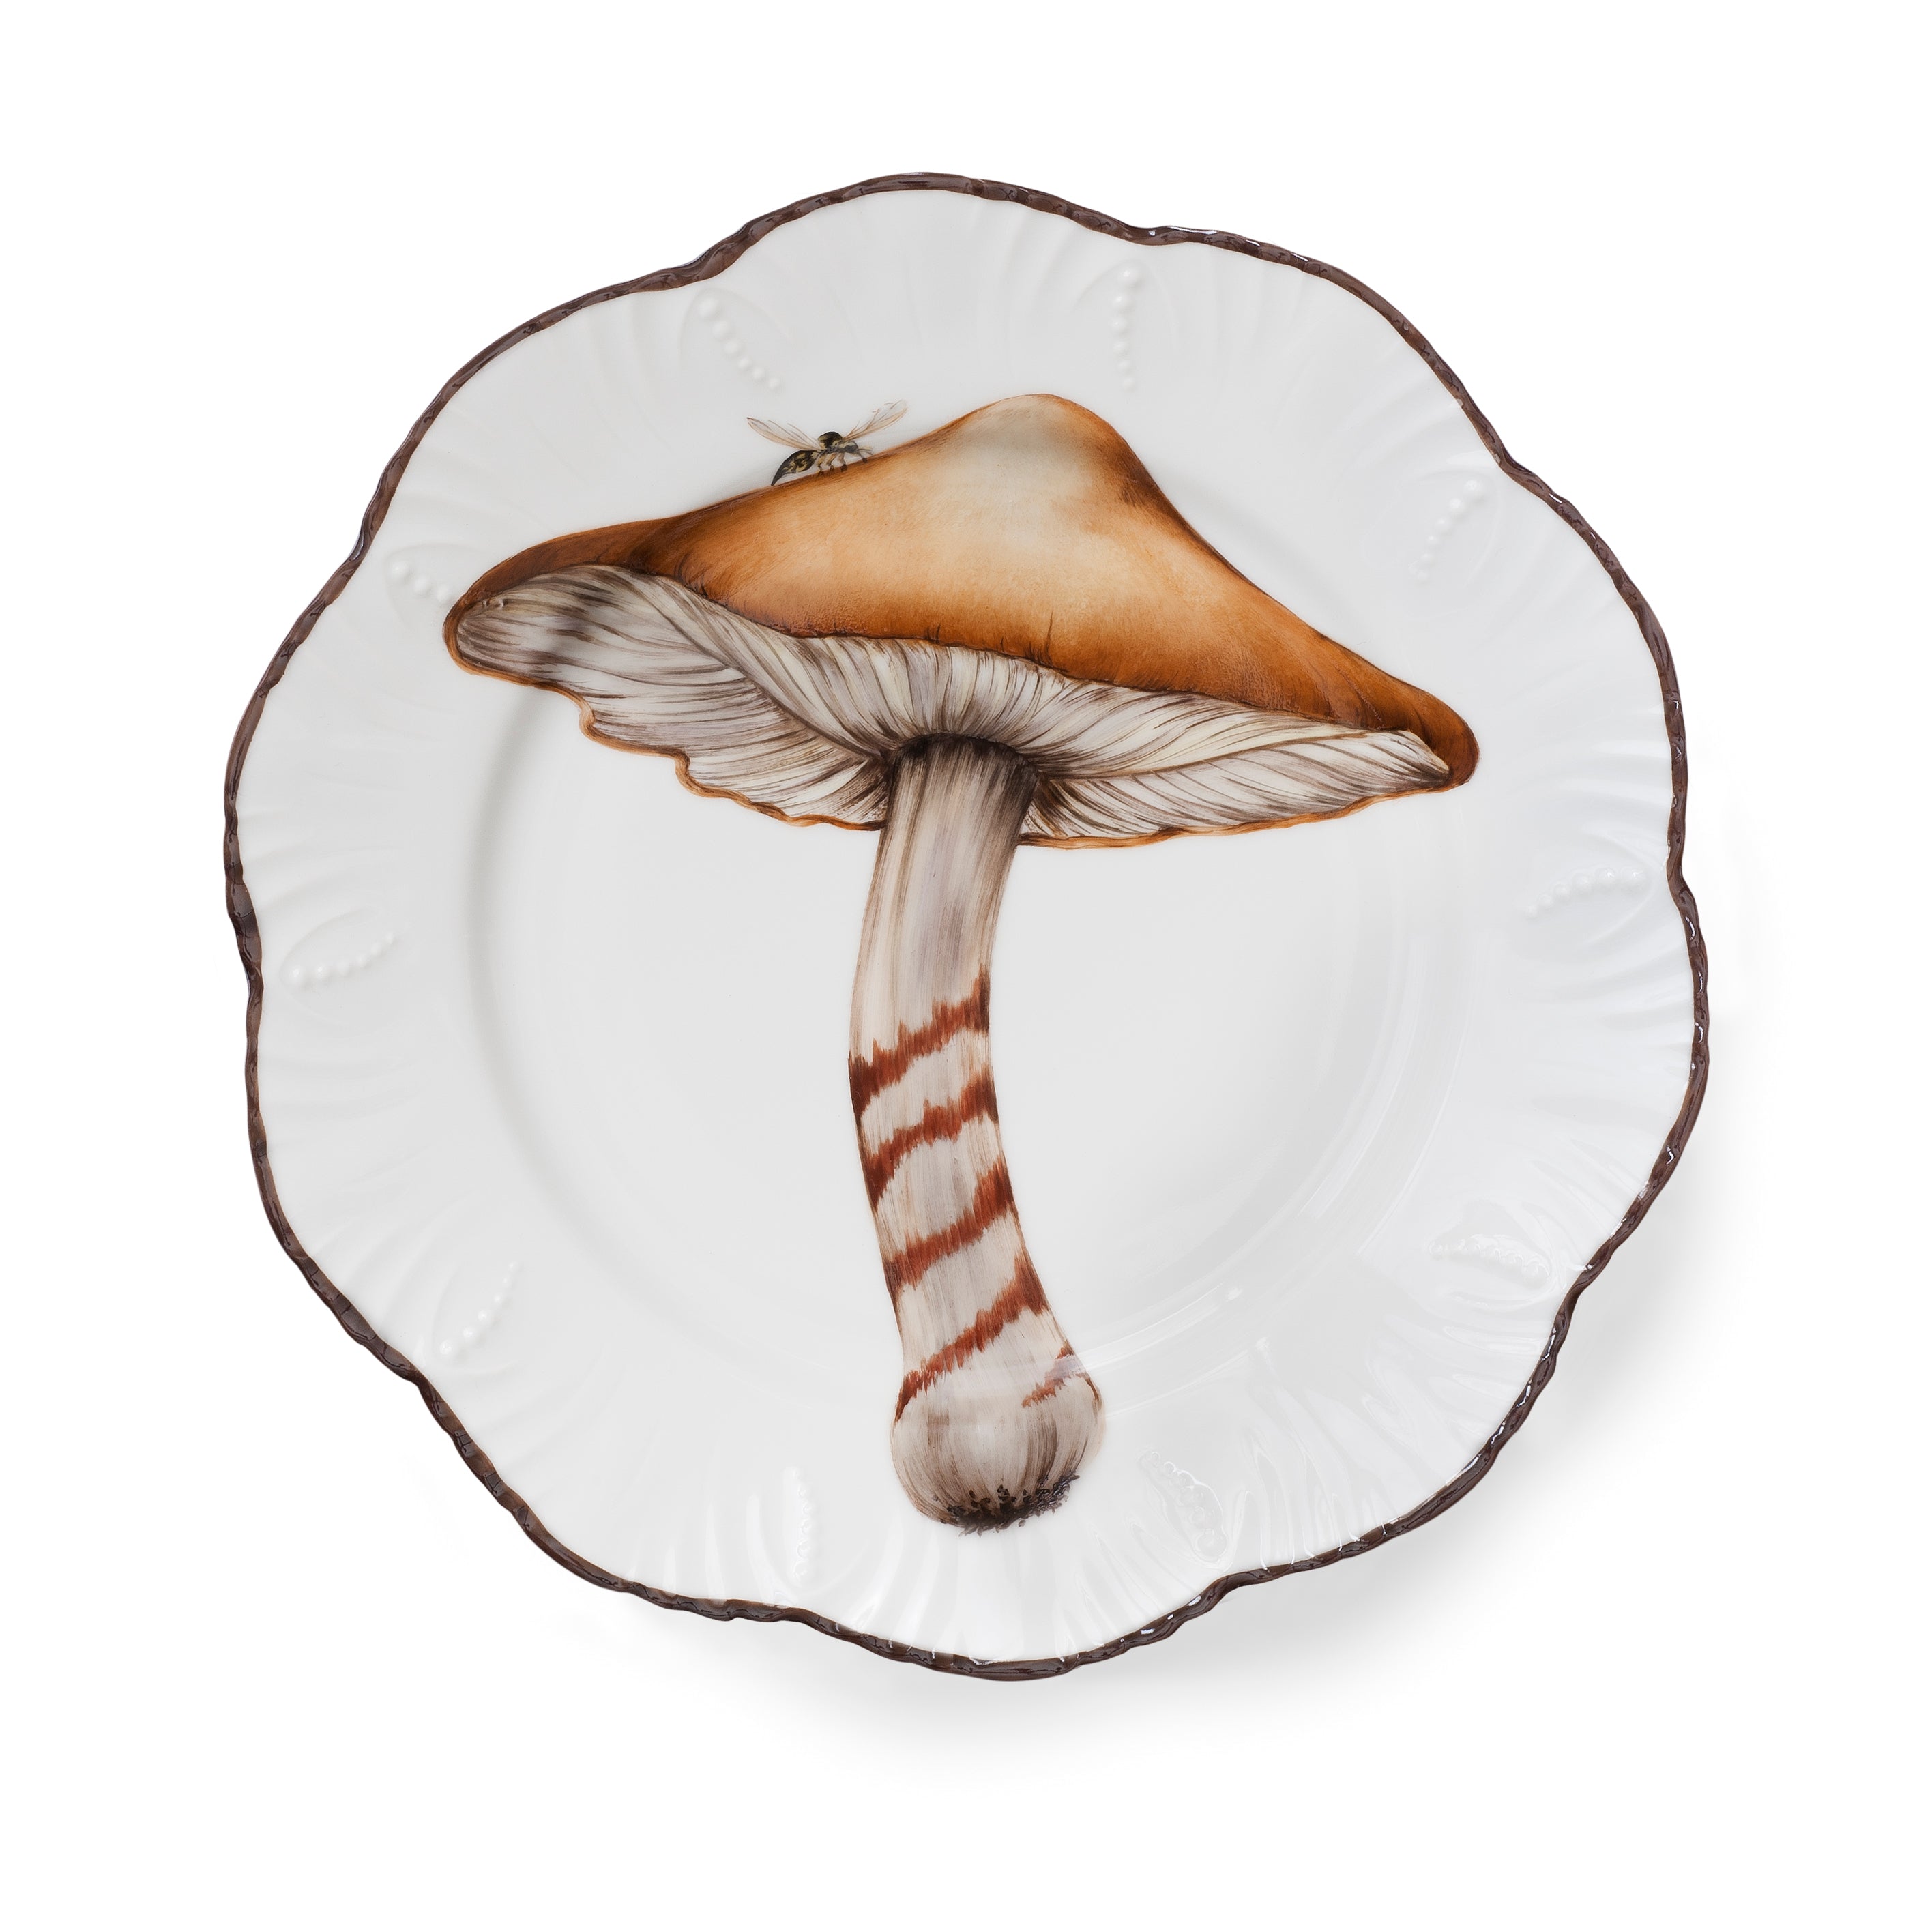 Les champignons - Dinner plate 02